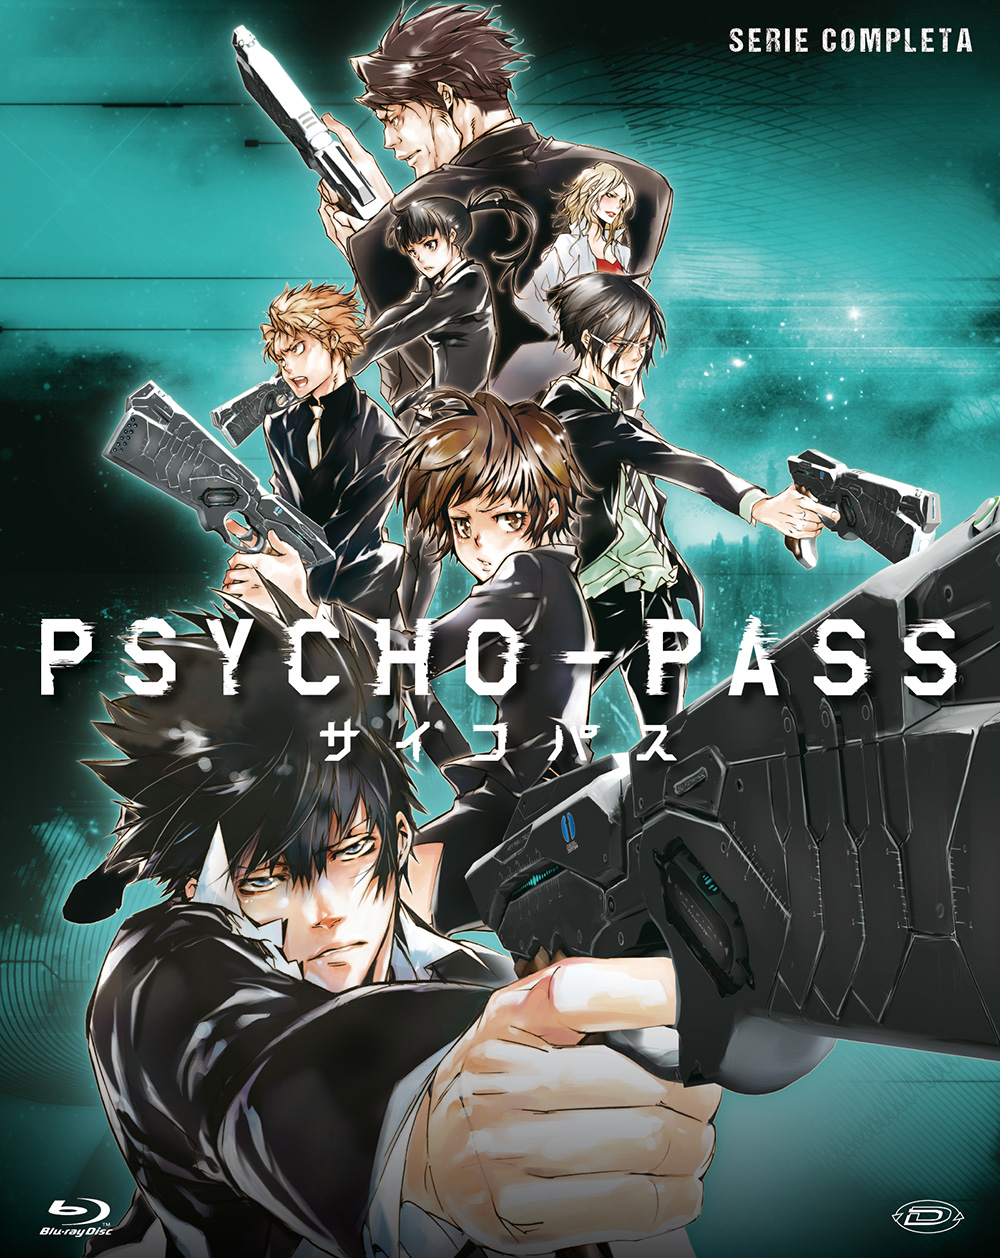 Blu-Ray Psycho Pass - Serie Completa (Eps 01-22) (4 Blu-Ray) NUOVO SIGILLATO, EDIZIONE DEL 12/12/2018 SUBITO DISPONIBILE